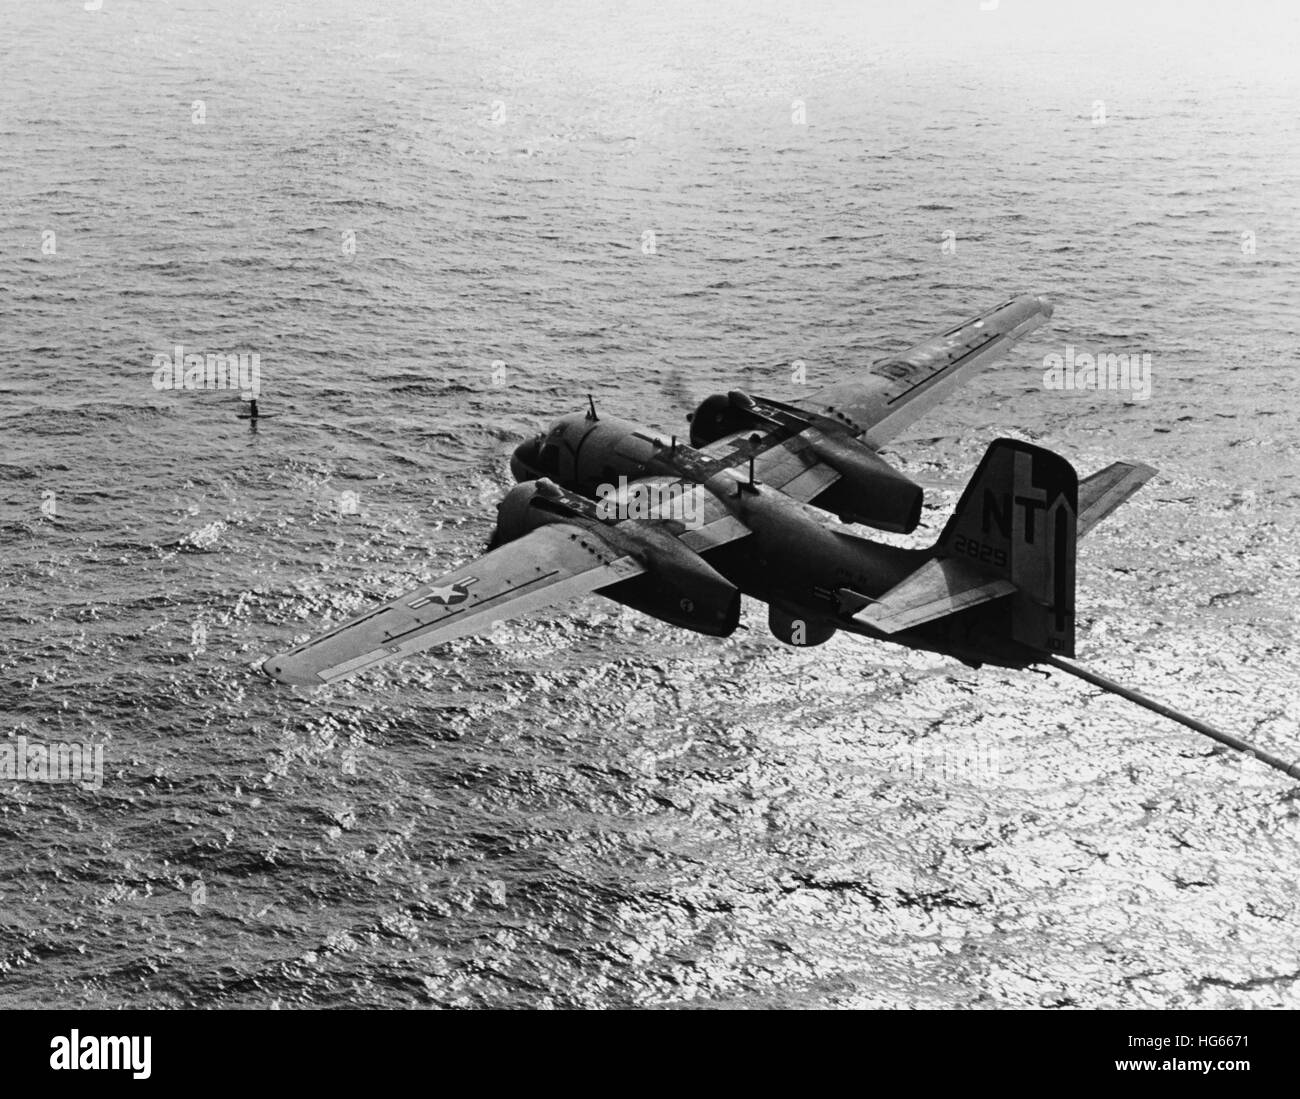 S-2E Tracker aeromobile durante un anti-guerra sottomarina esercitazione, 1970. Foto Stock